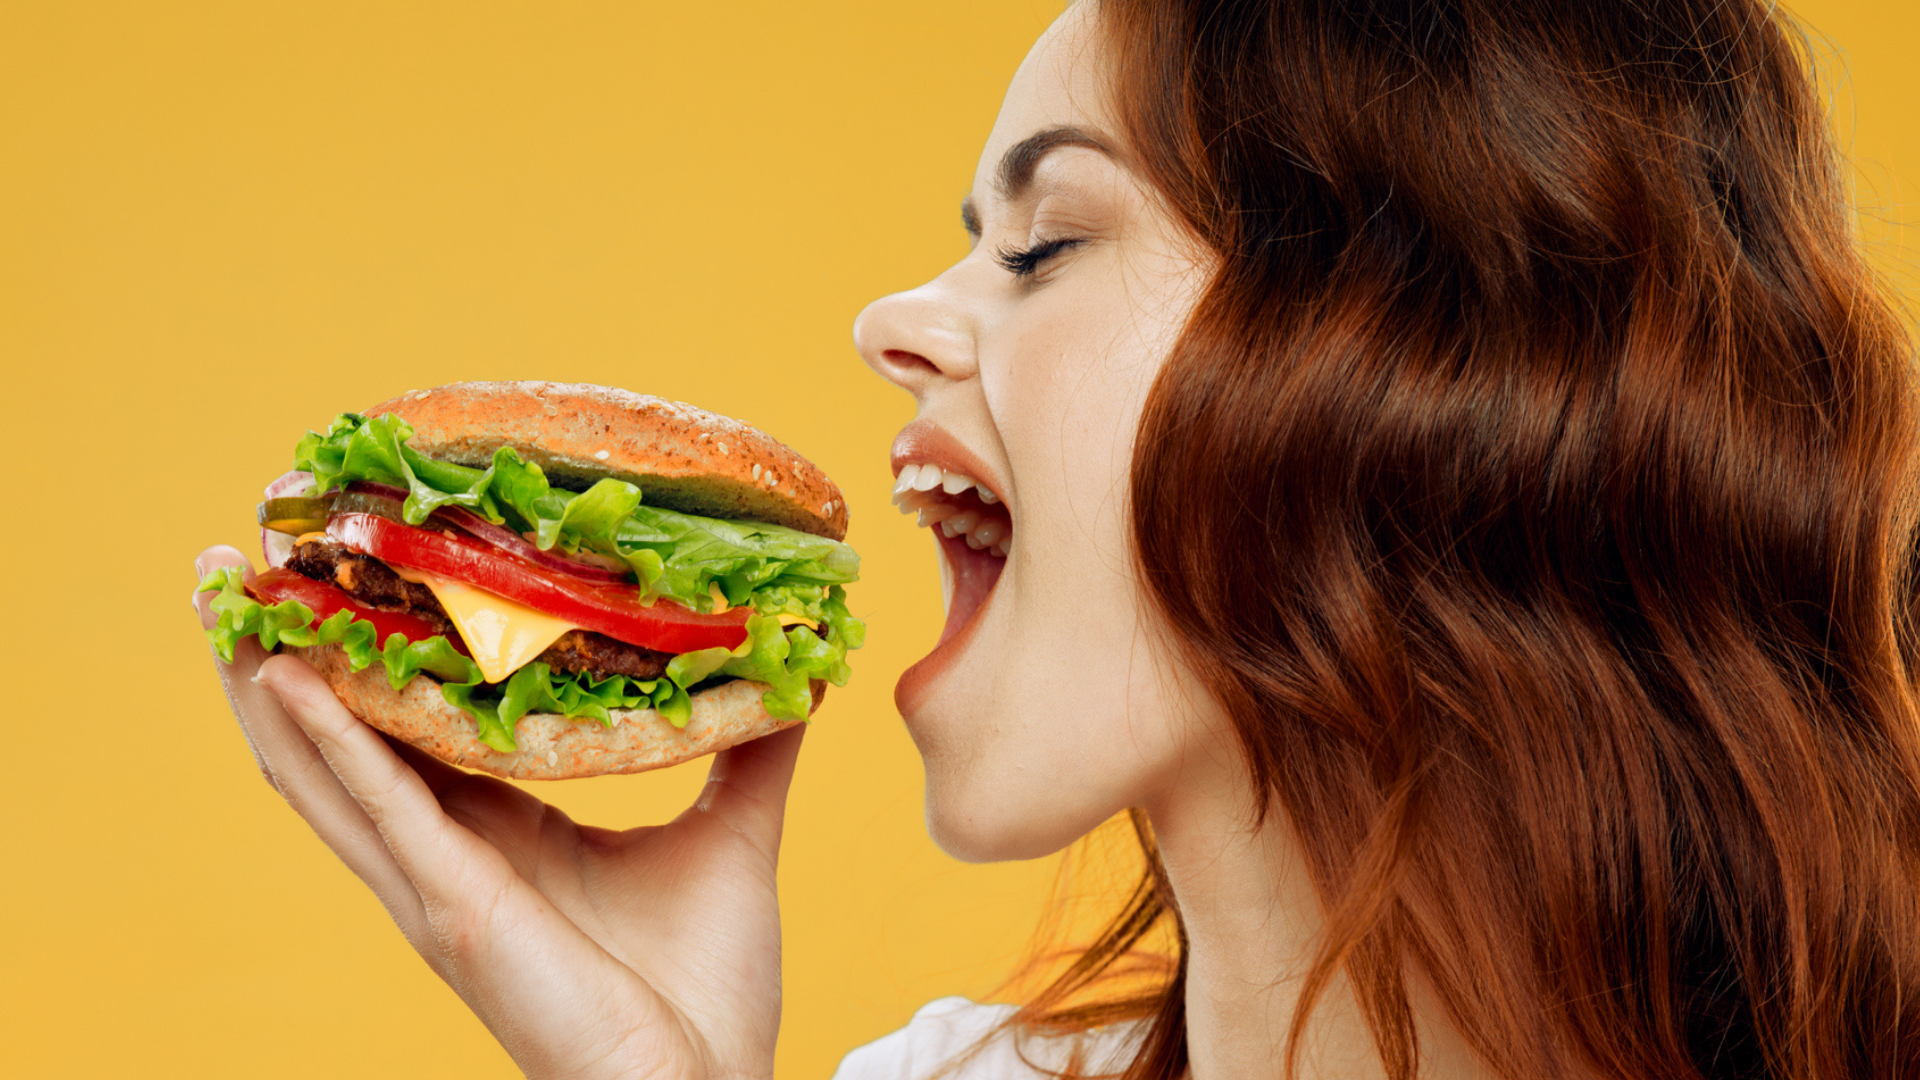 Estudio: El estrés tiene las mismas calorías que una hamburguesa doble